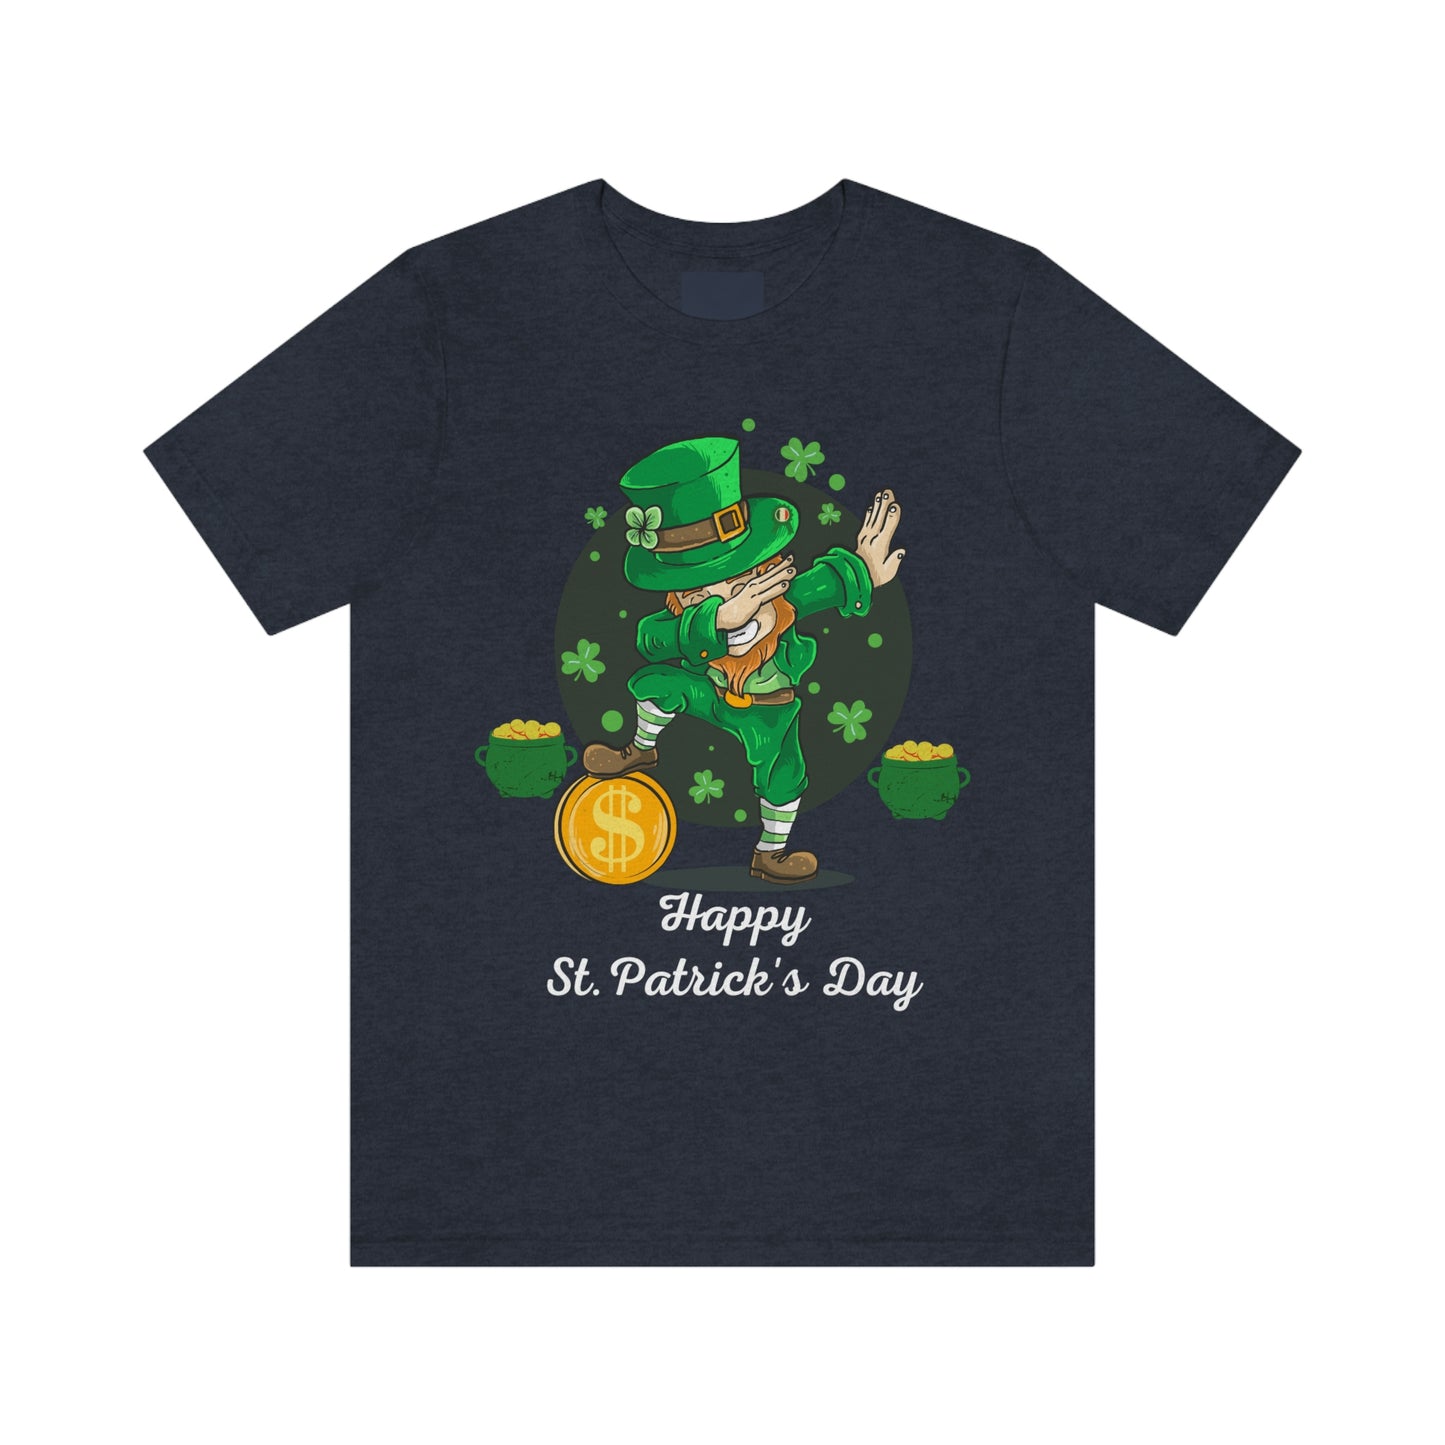 Happy St Patrick's Day shirt luck of the Irish shirt - Shamrock shirt